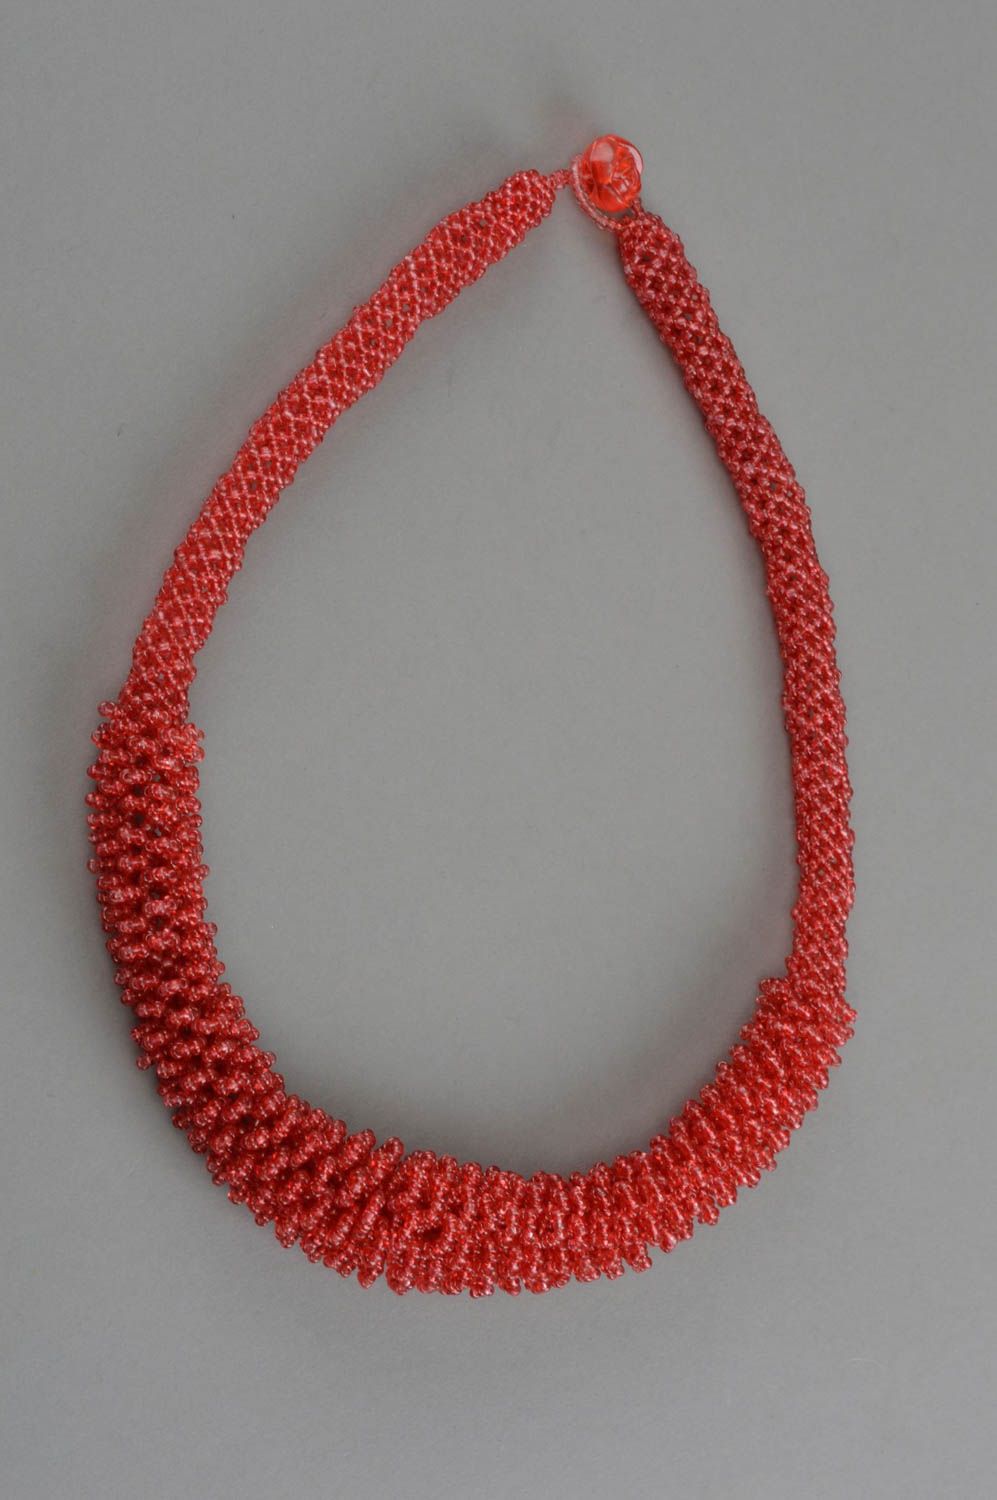 Красный жгут из бисера ожерелье ручной работы красивое оригинальное массивное фото 2